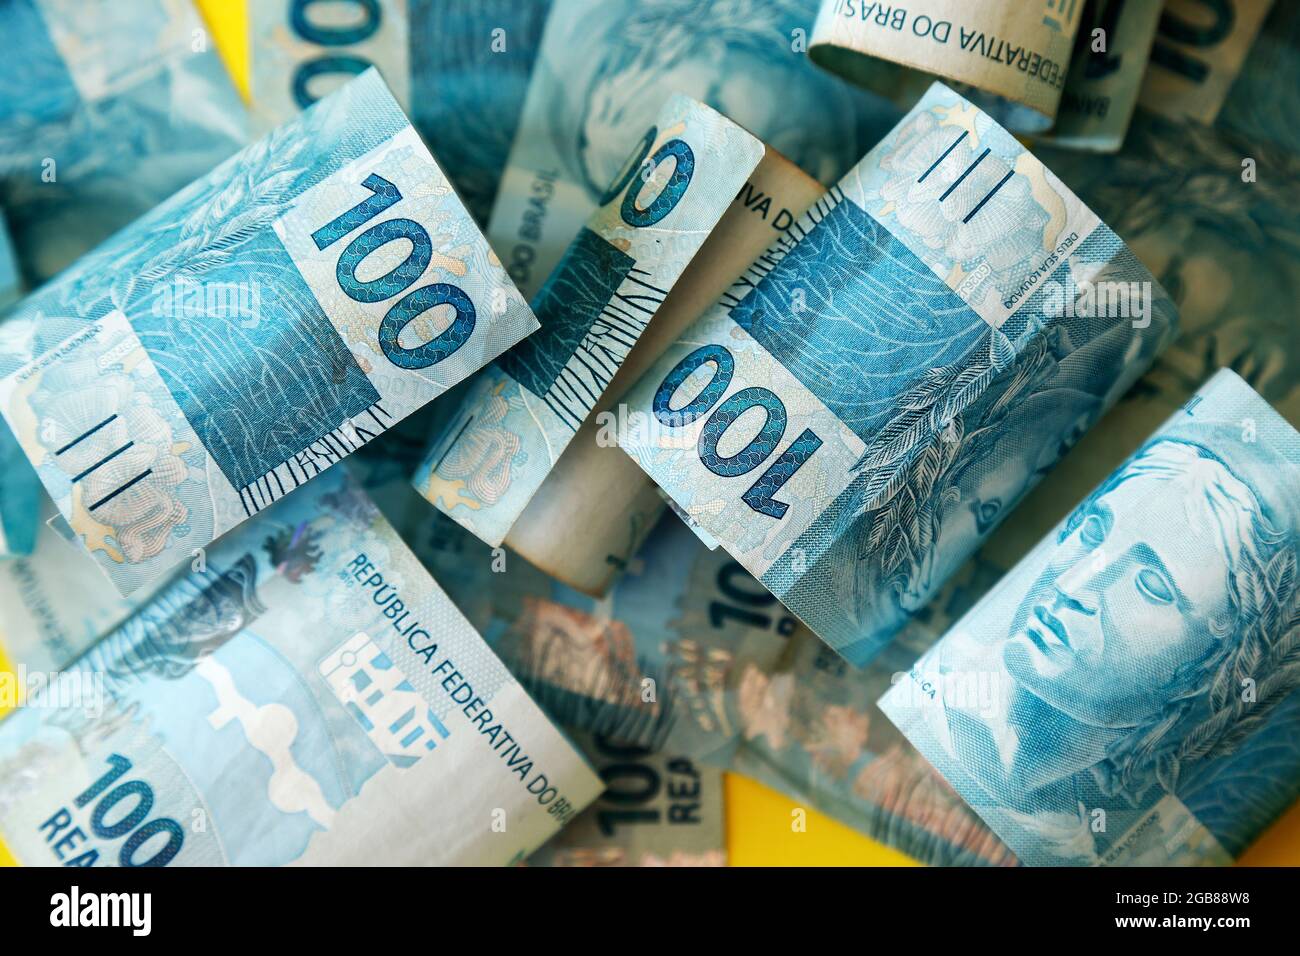 argent du brésil empilé sur la surface jaune - plusieurs centaines des factures réelles Banque D'Images